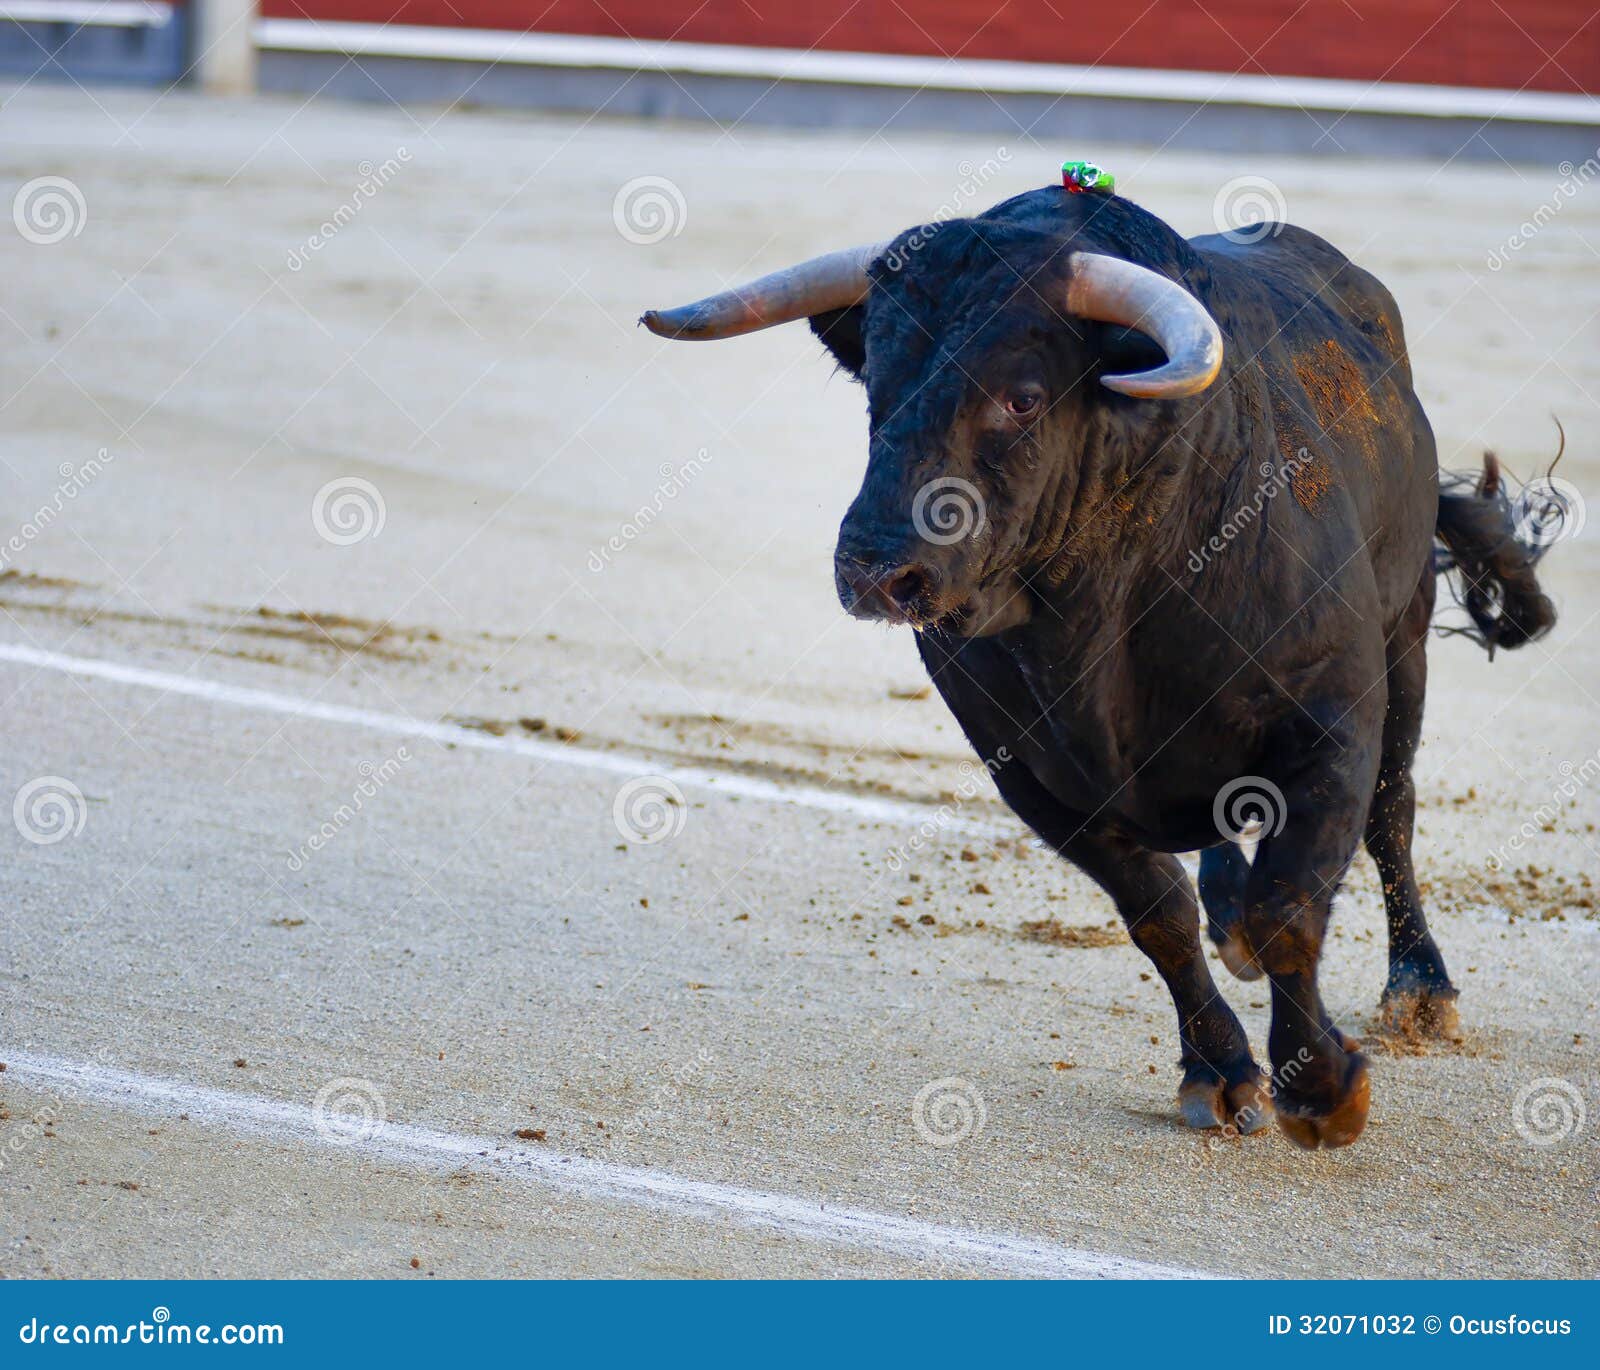 bullfighting. spanish fiesta